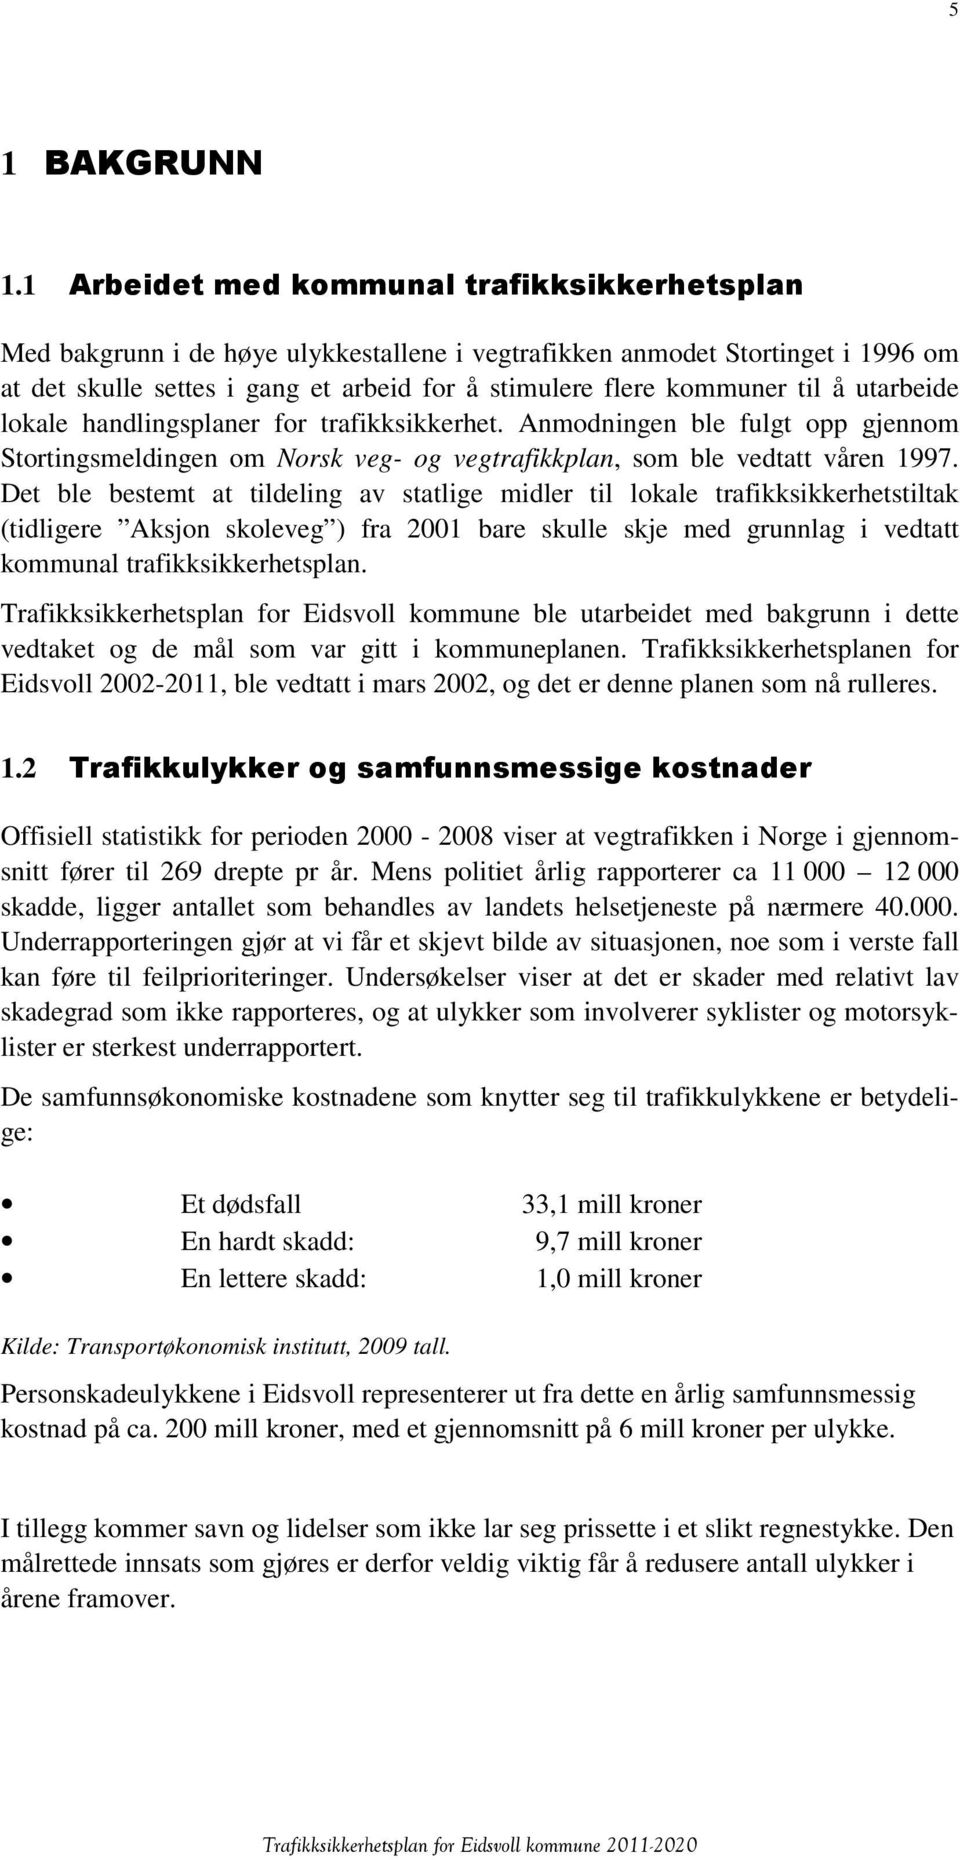 til å utarbeide lokale handlingsplaner for trafikksikkerhet. Anmodningen ble fulgt opp gjennom Stortingsmeldingen om Norsk veg- og vegtrafikkplan, som ble vedtatt våren 1997.